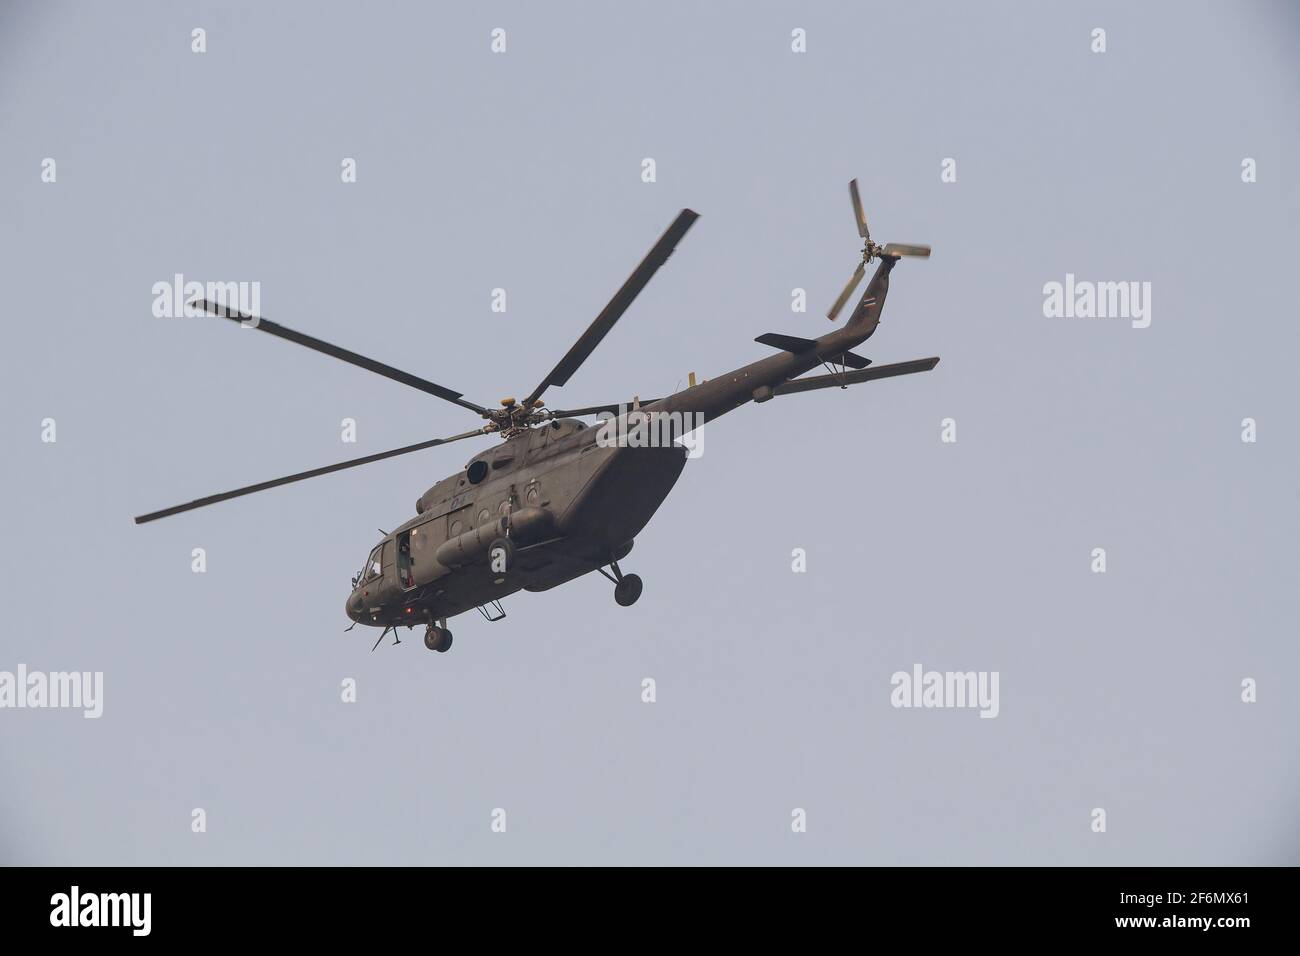 Armée royale thaïlandaise mi 17 hélicopter. Le Mil mi-17 est un hélicoptère militaire russe en production dans deux usines de Kazan et d'Ulan-Ude. Banque D'Images